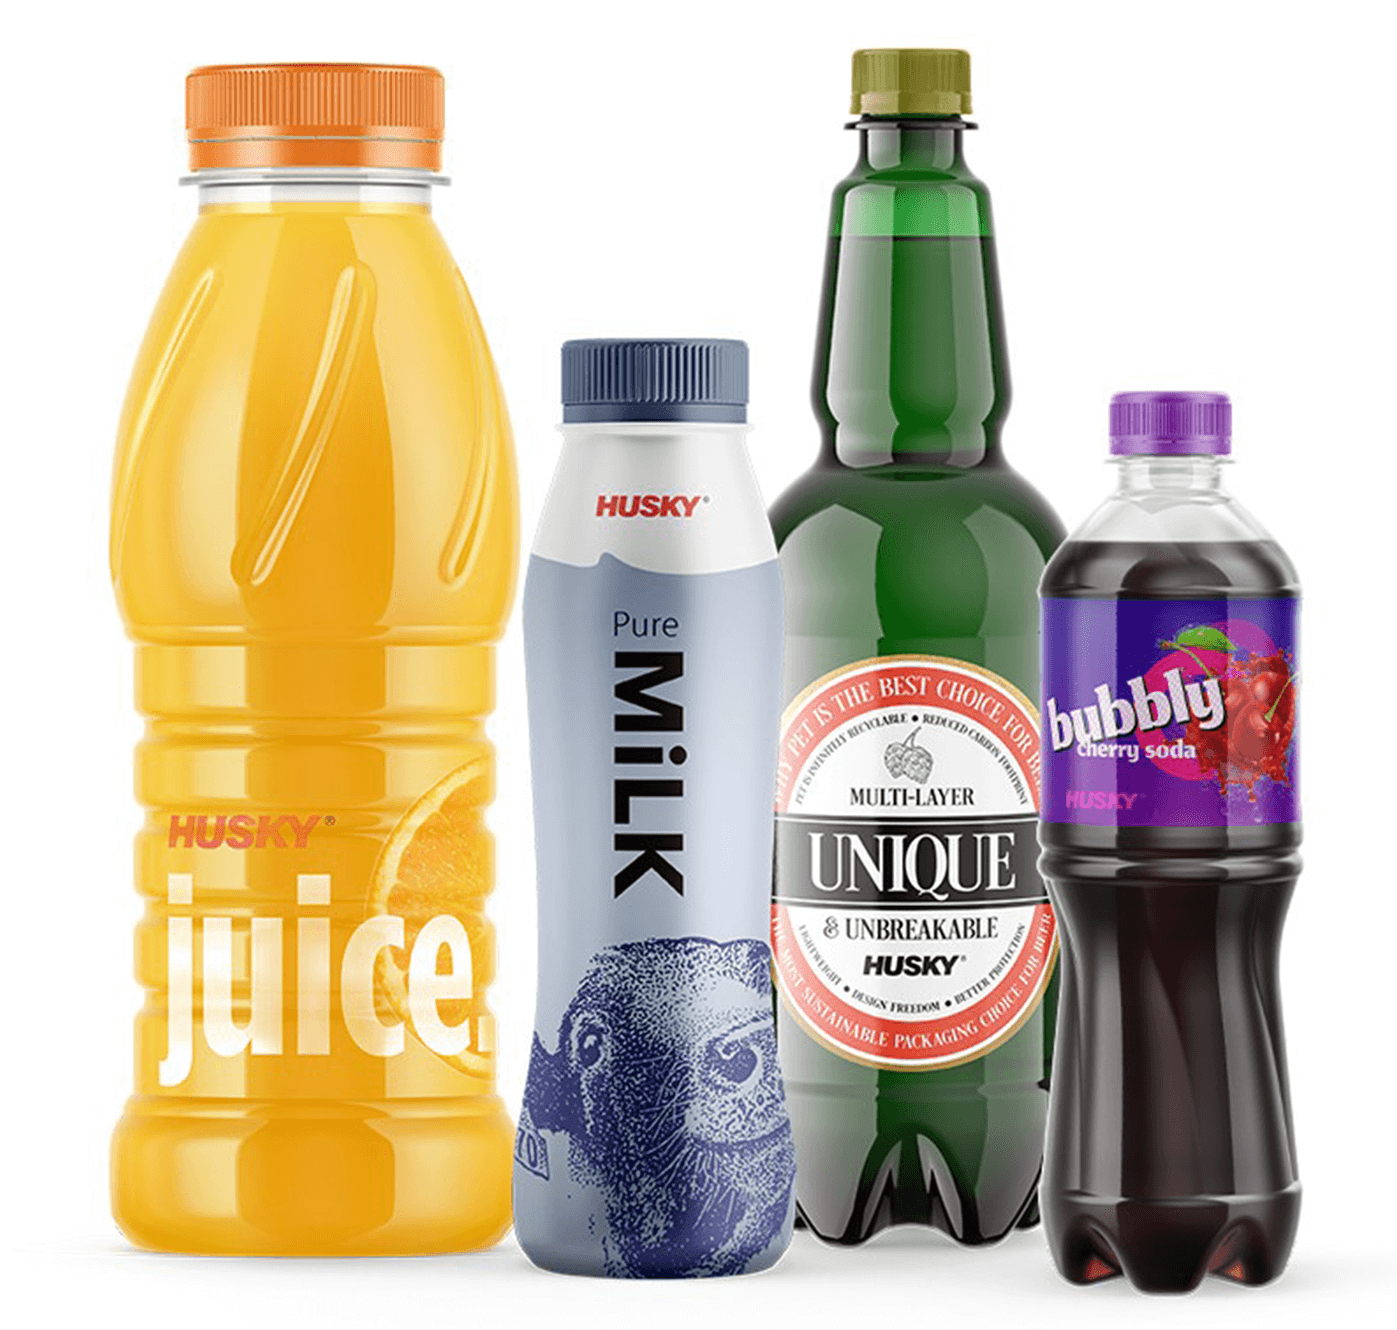 Examples of beverage packaging using multi-layer PET: Juice, beer, soda, milk